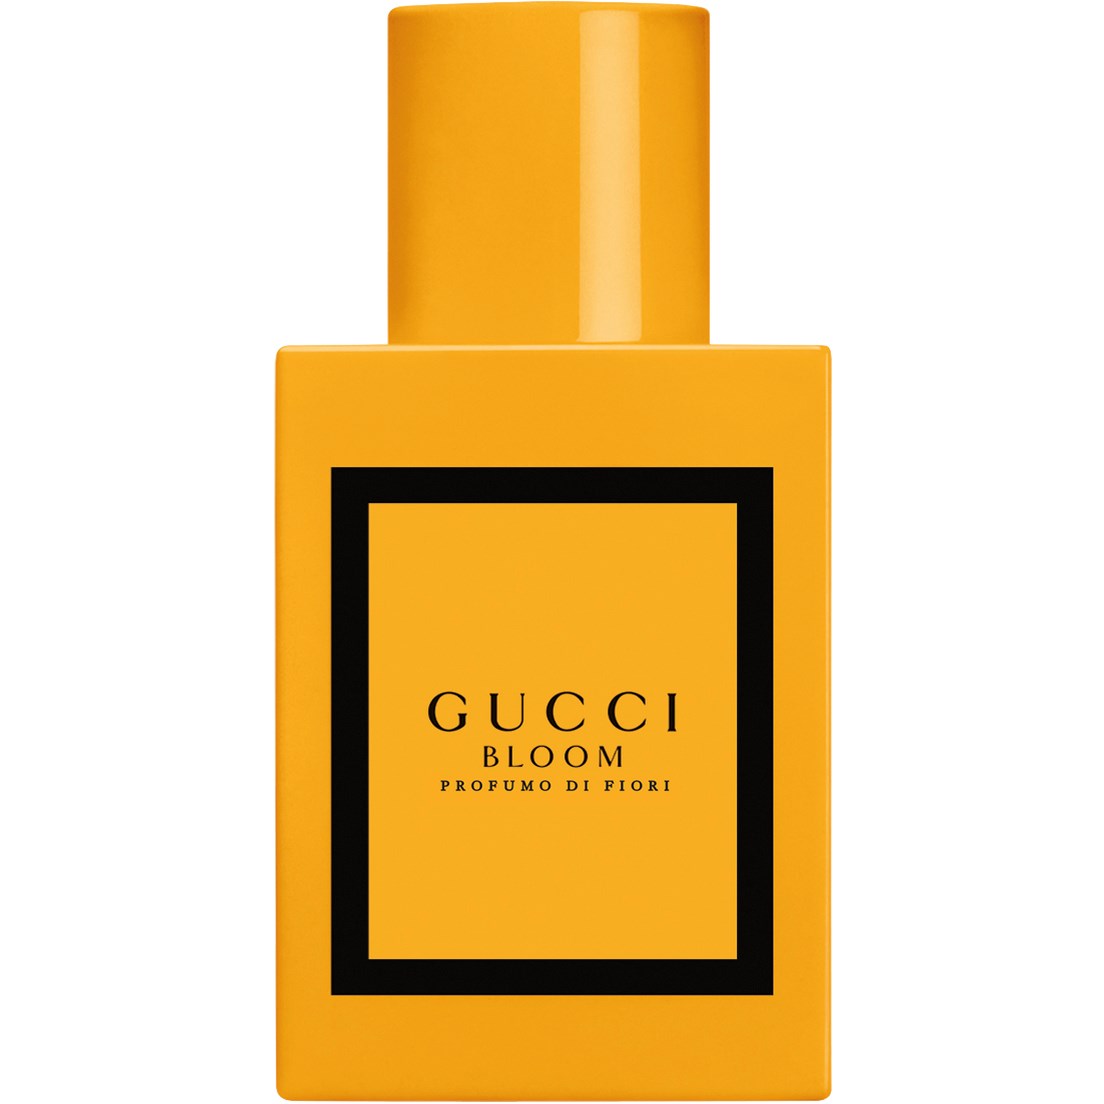 Gucci Bloom Profumo Di Fiori Eau de Parfum 30 ml